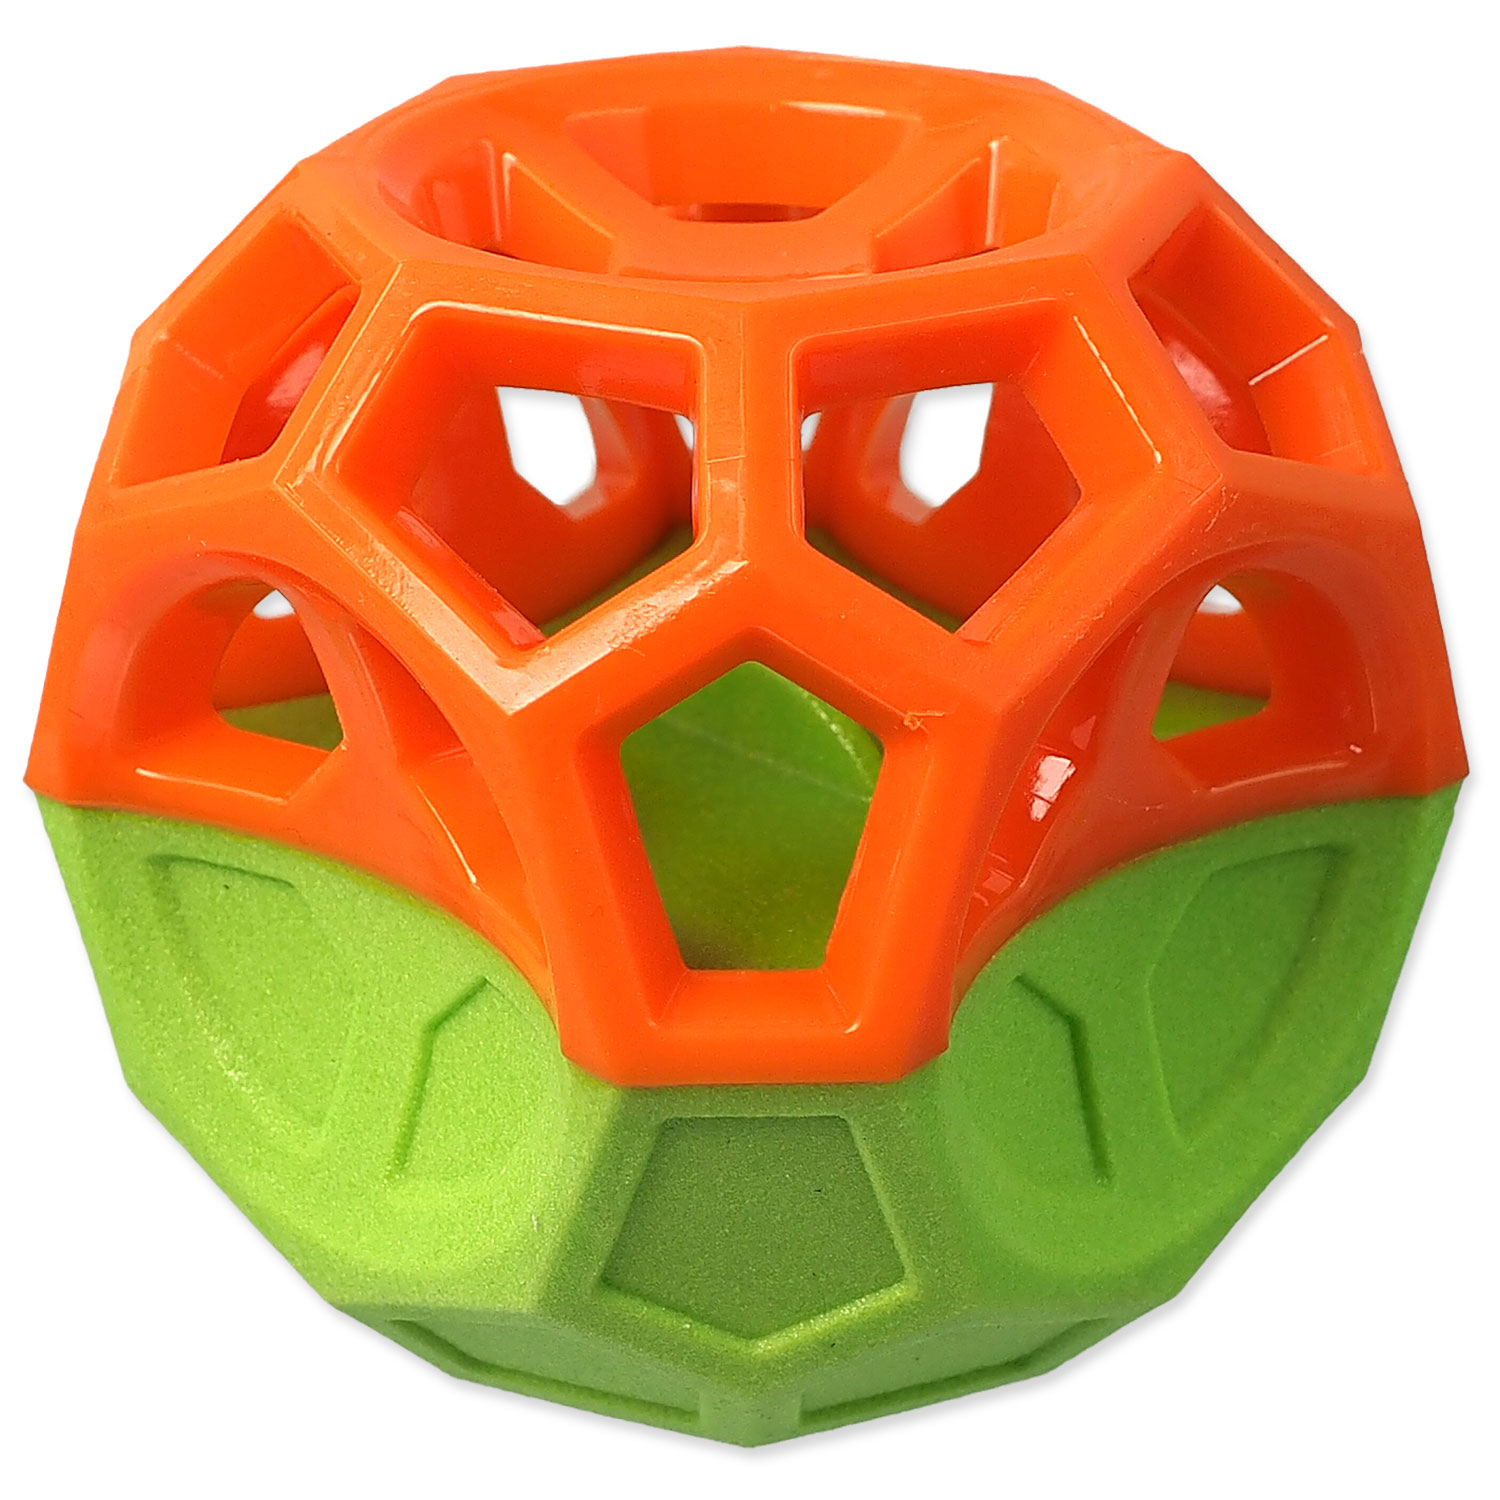 Hračka DOG FANTASY Míček s geometrickými obrazci pískací oranžovo-zelená, 8,5 cm